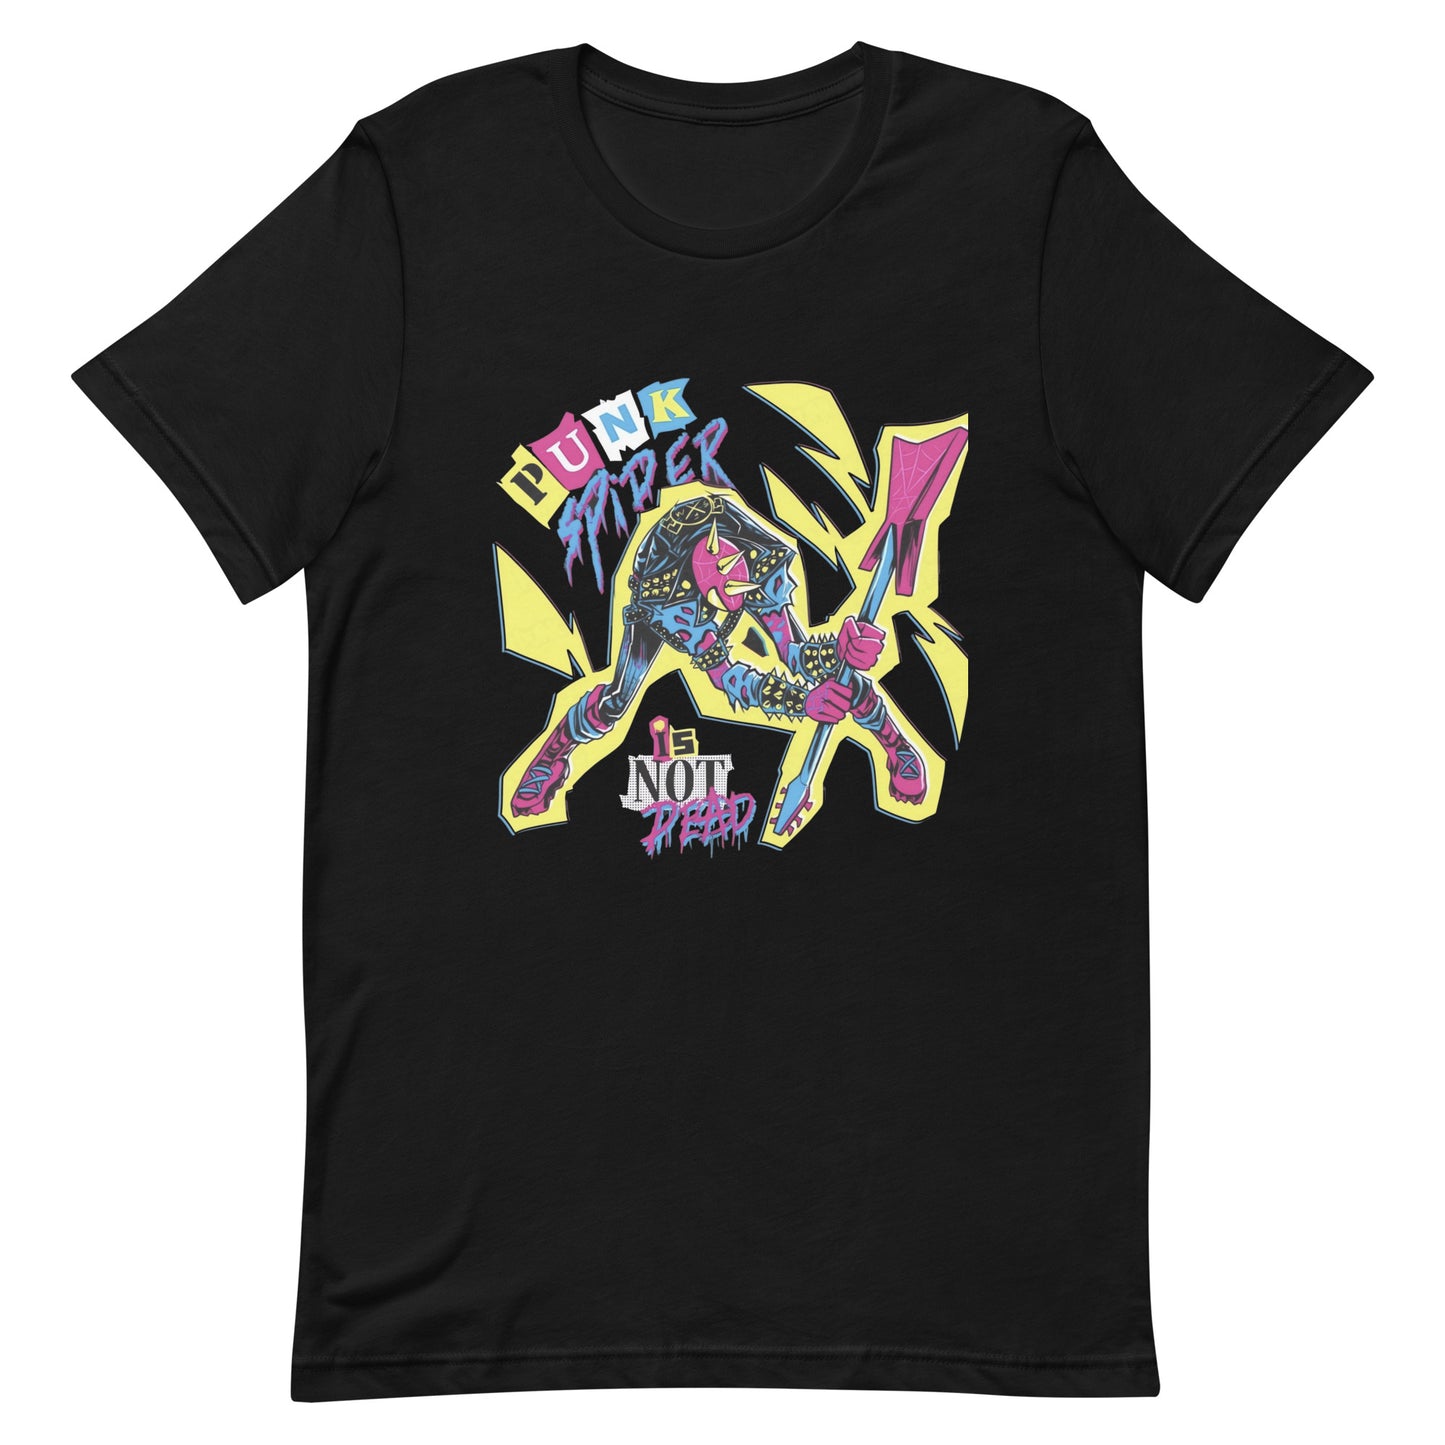 Camiseta Punk Spider, nuestras opciones de playeras son Unisex. disponible en Superstar. Compra y envíos internacionales.